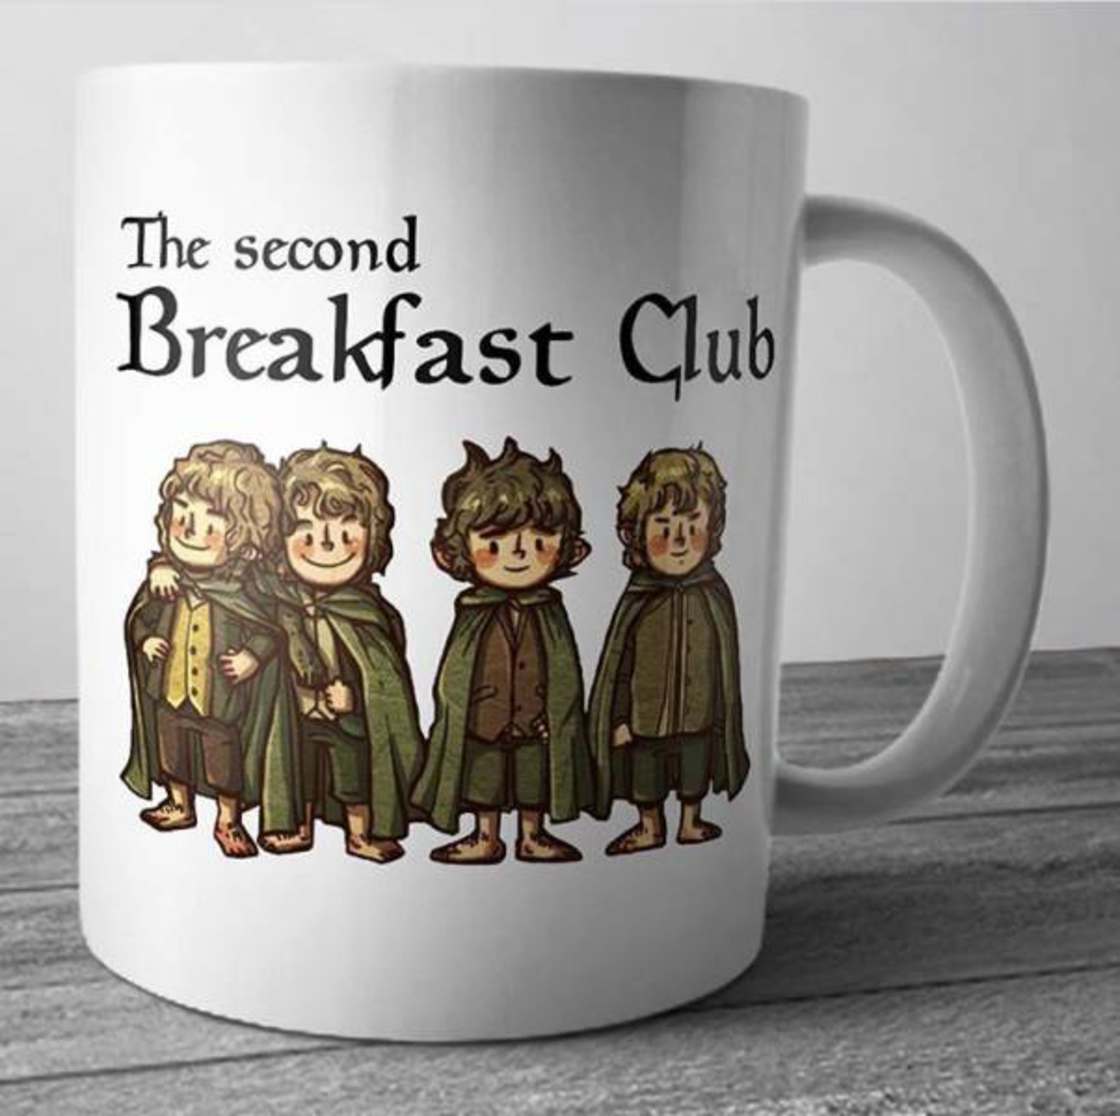 random second breakfast club - The second Breakfast Club